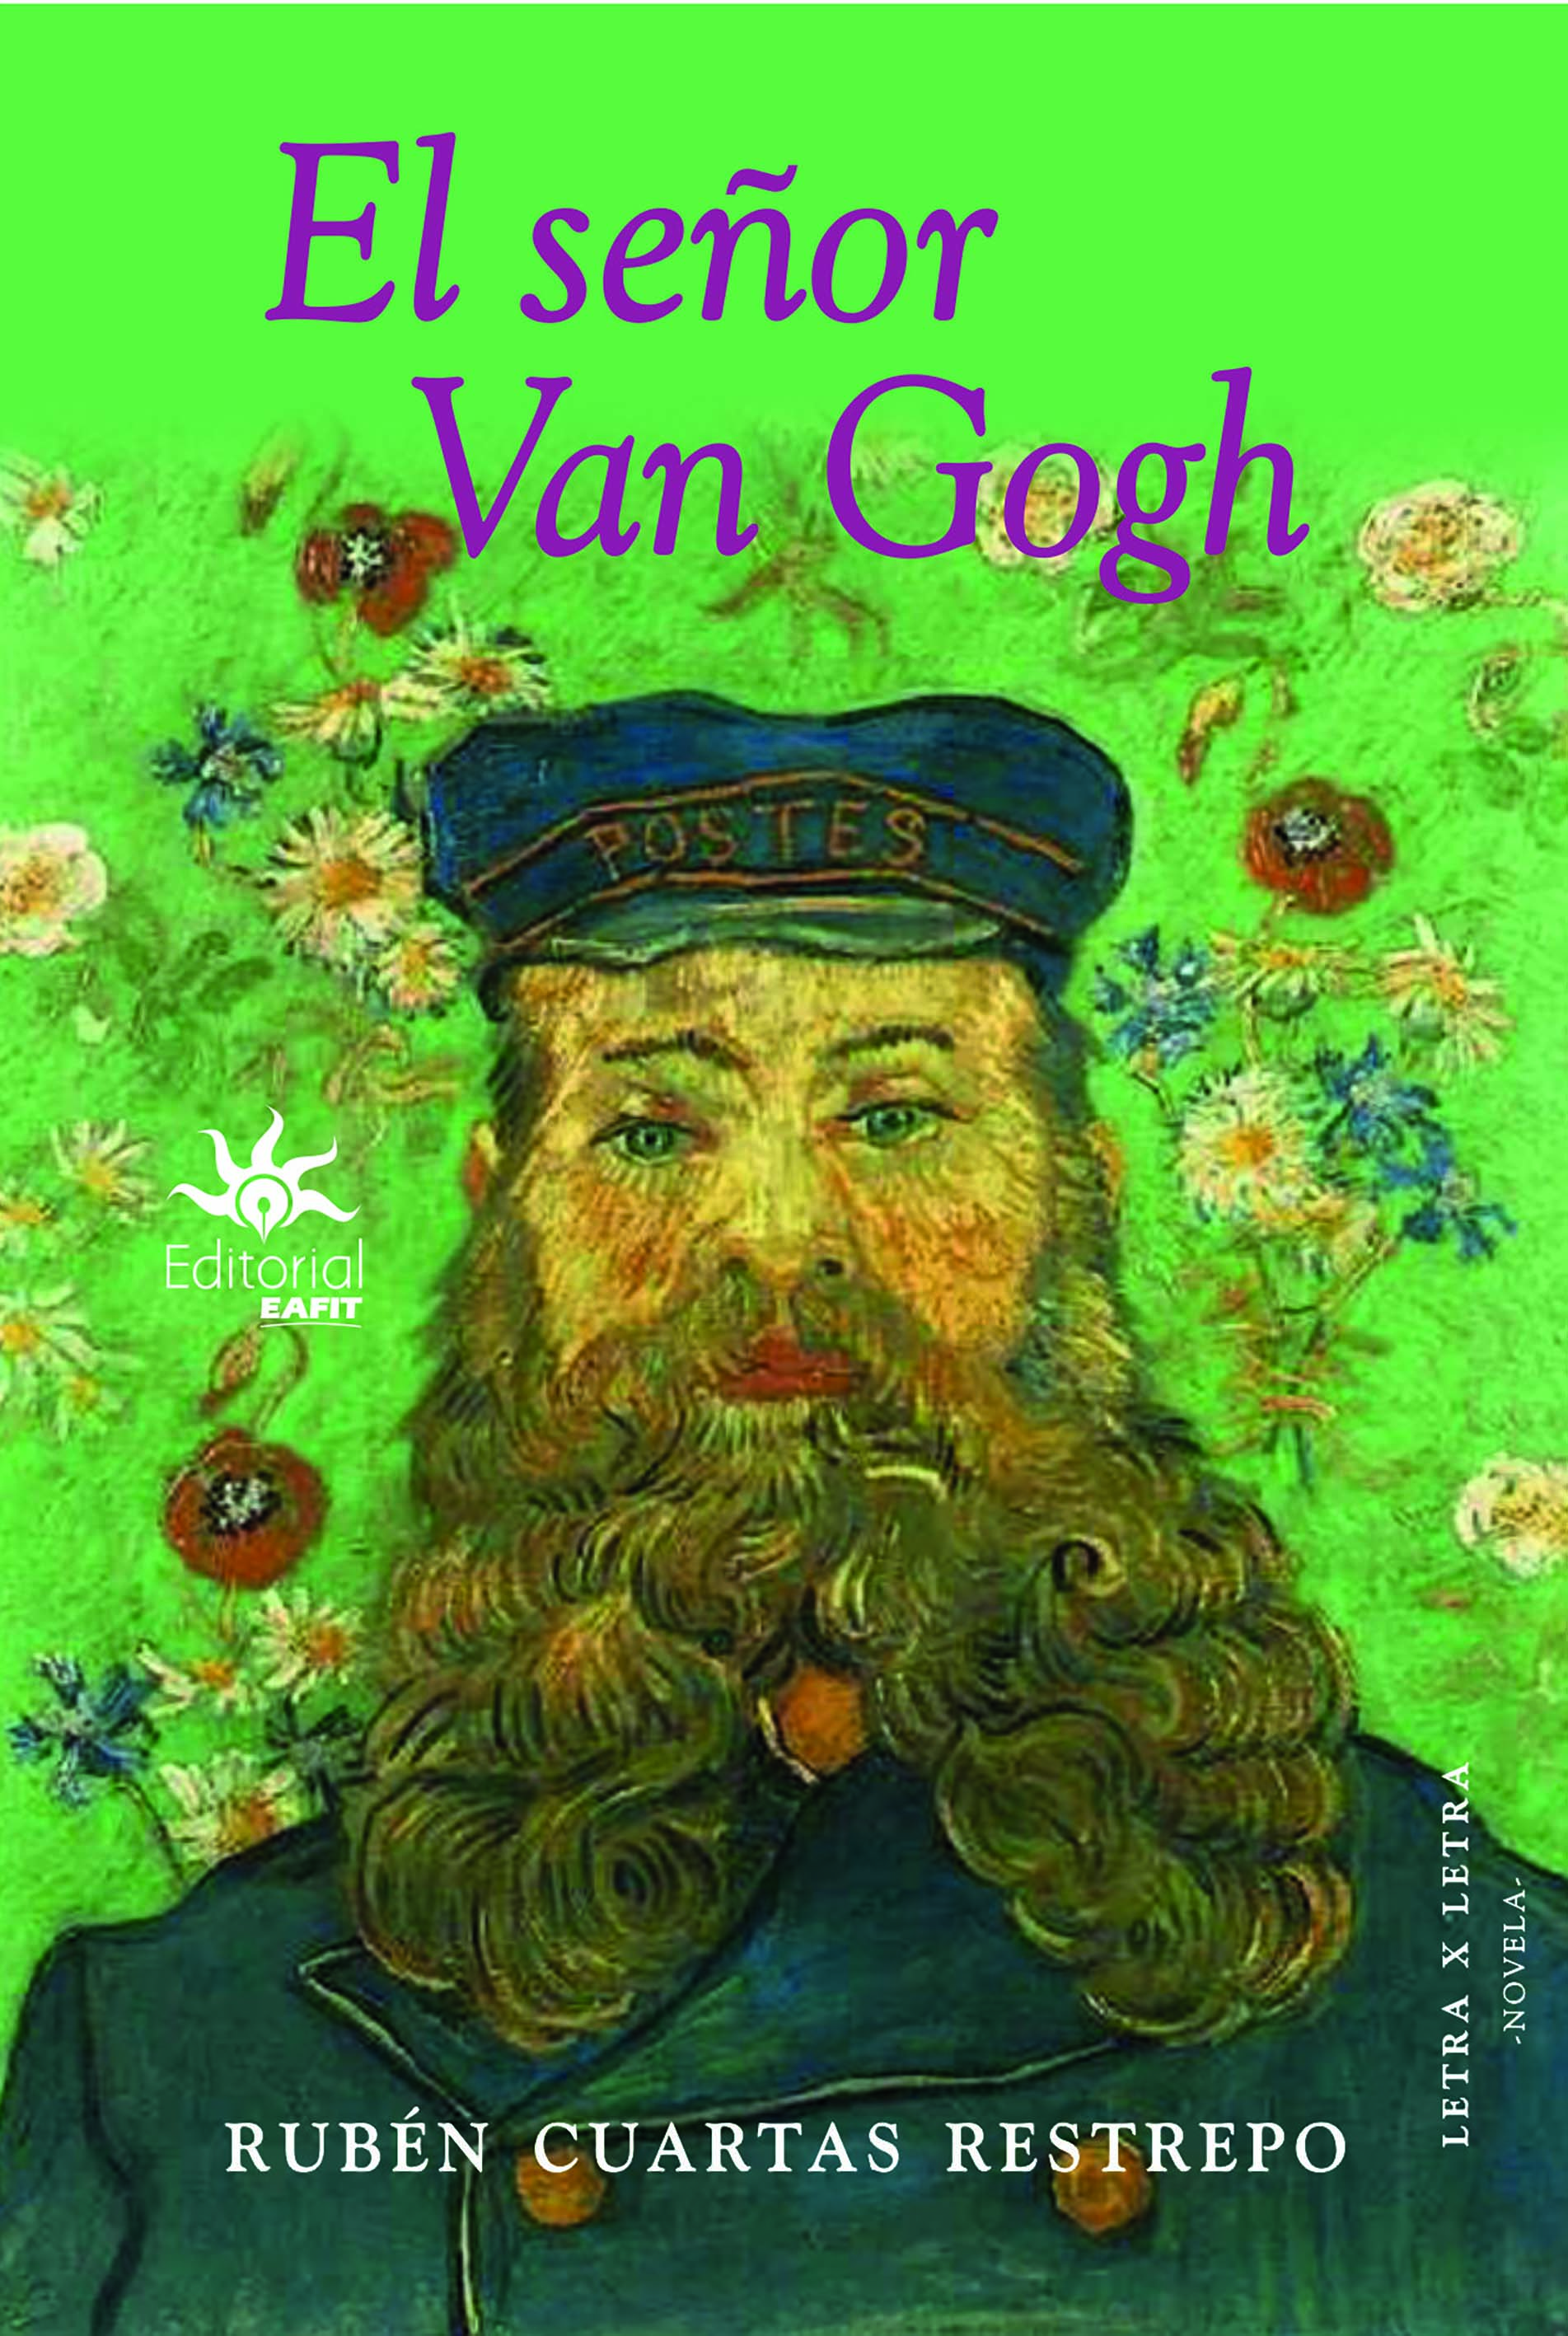 El seคor Van Gogh.jpg